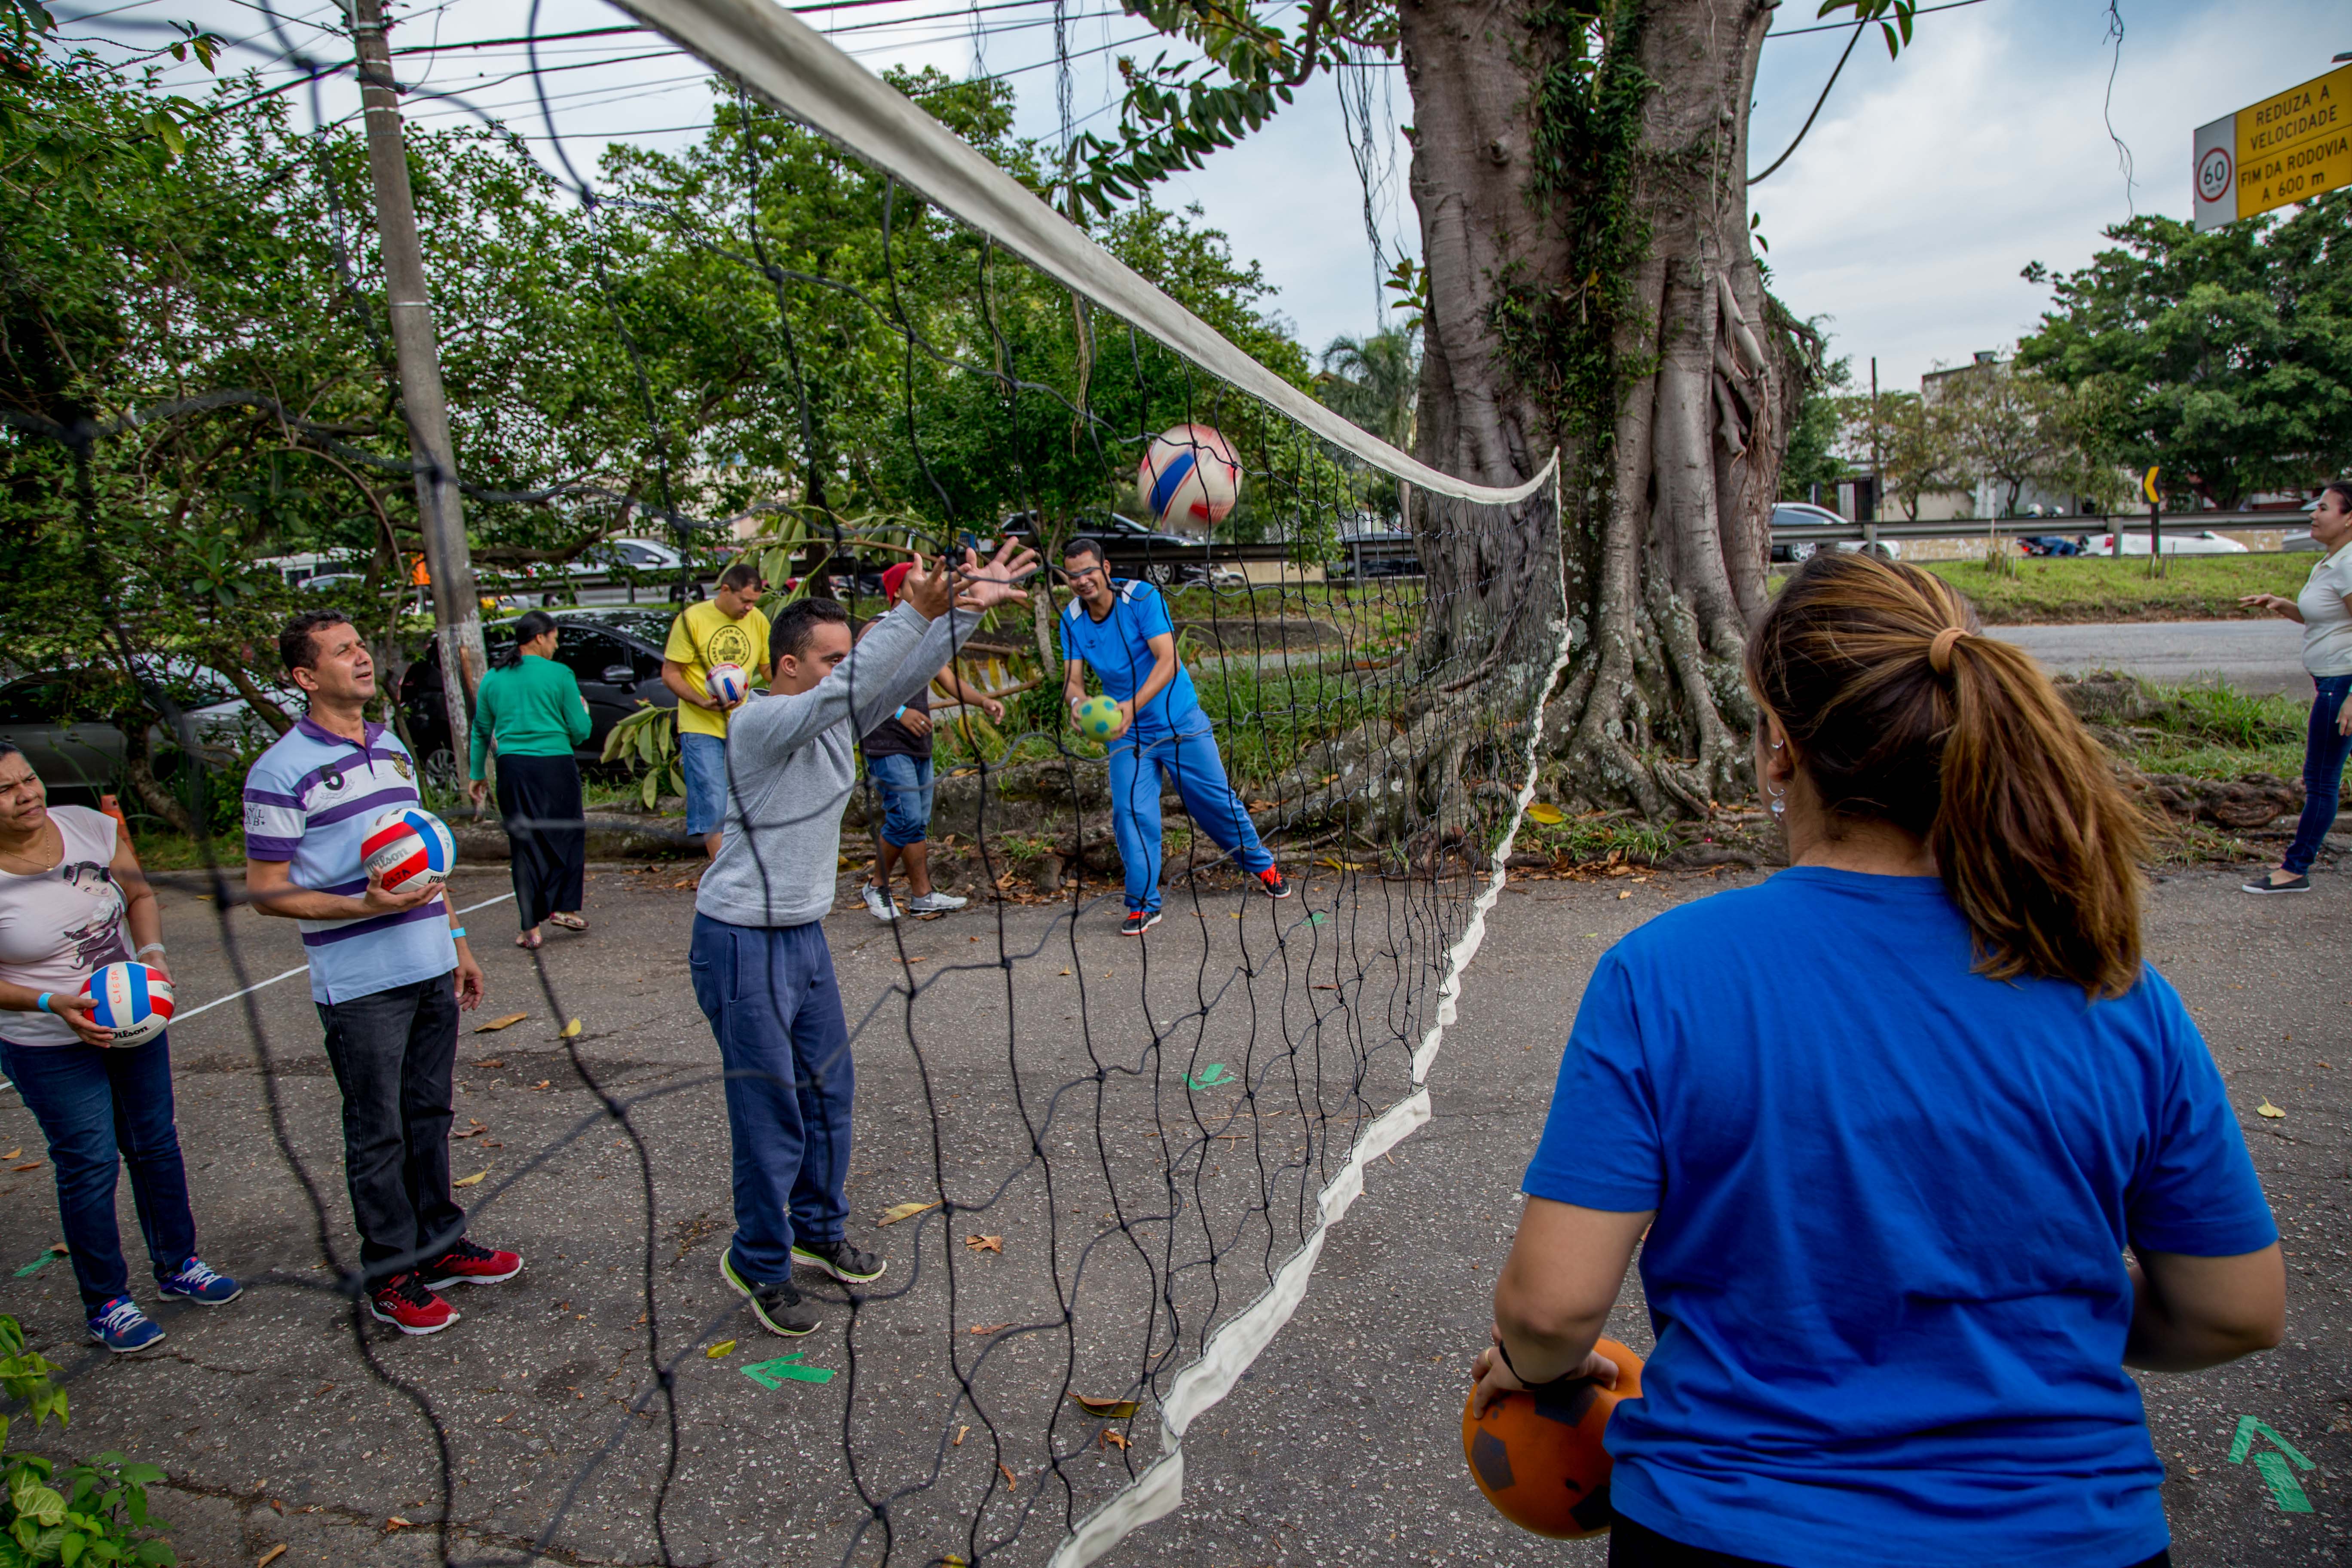 Estudante com deficiência lança bola acima de rede de vôlei pendurada a uma altura baixa na rua. Outros educandos e professores acompanham a atividade ao redor.